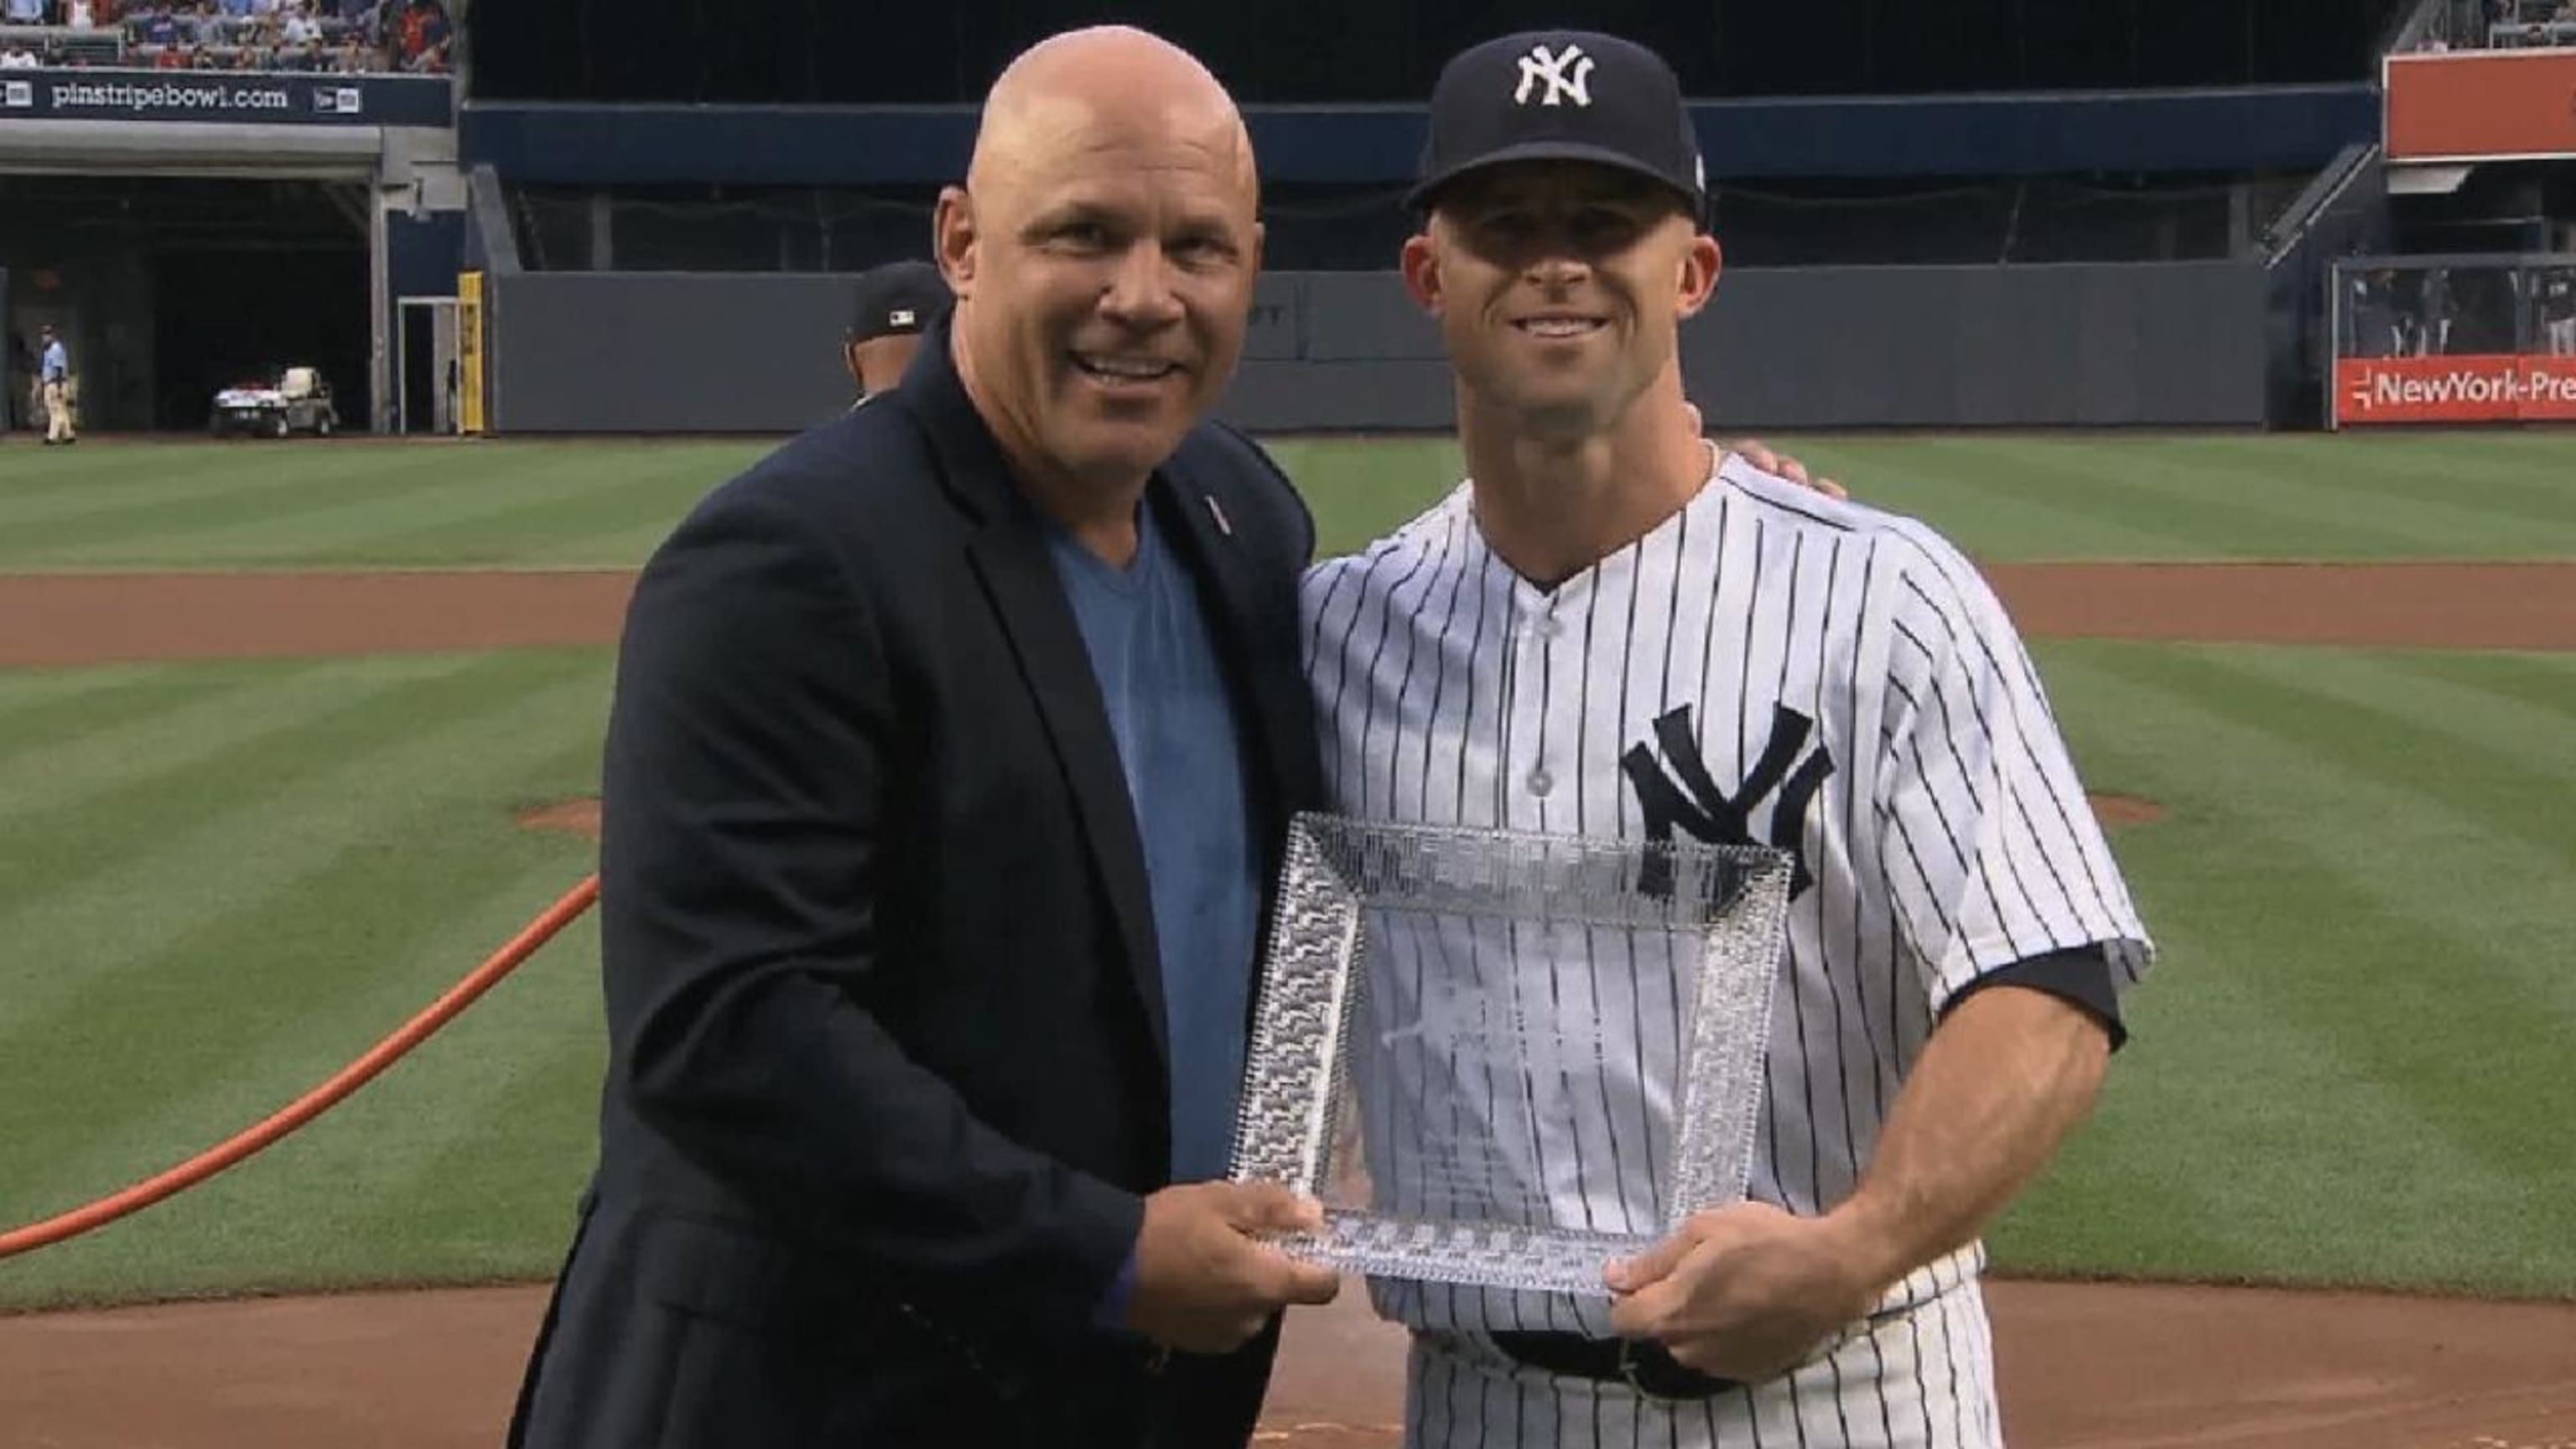 Former Enterprise baseball player wins Heart and Hustle Award